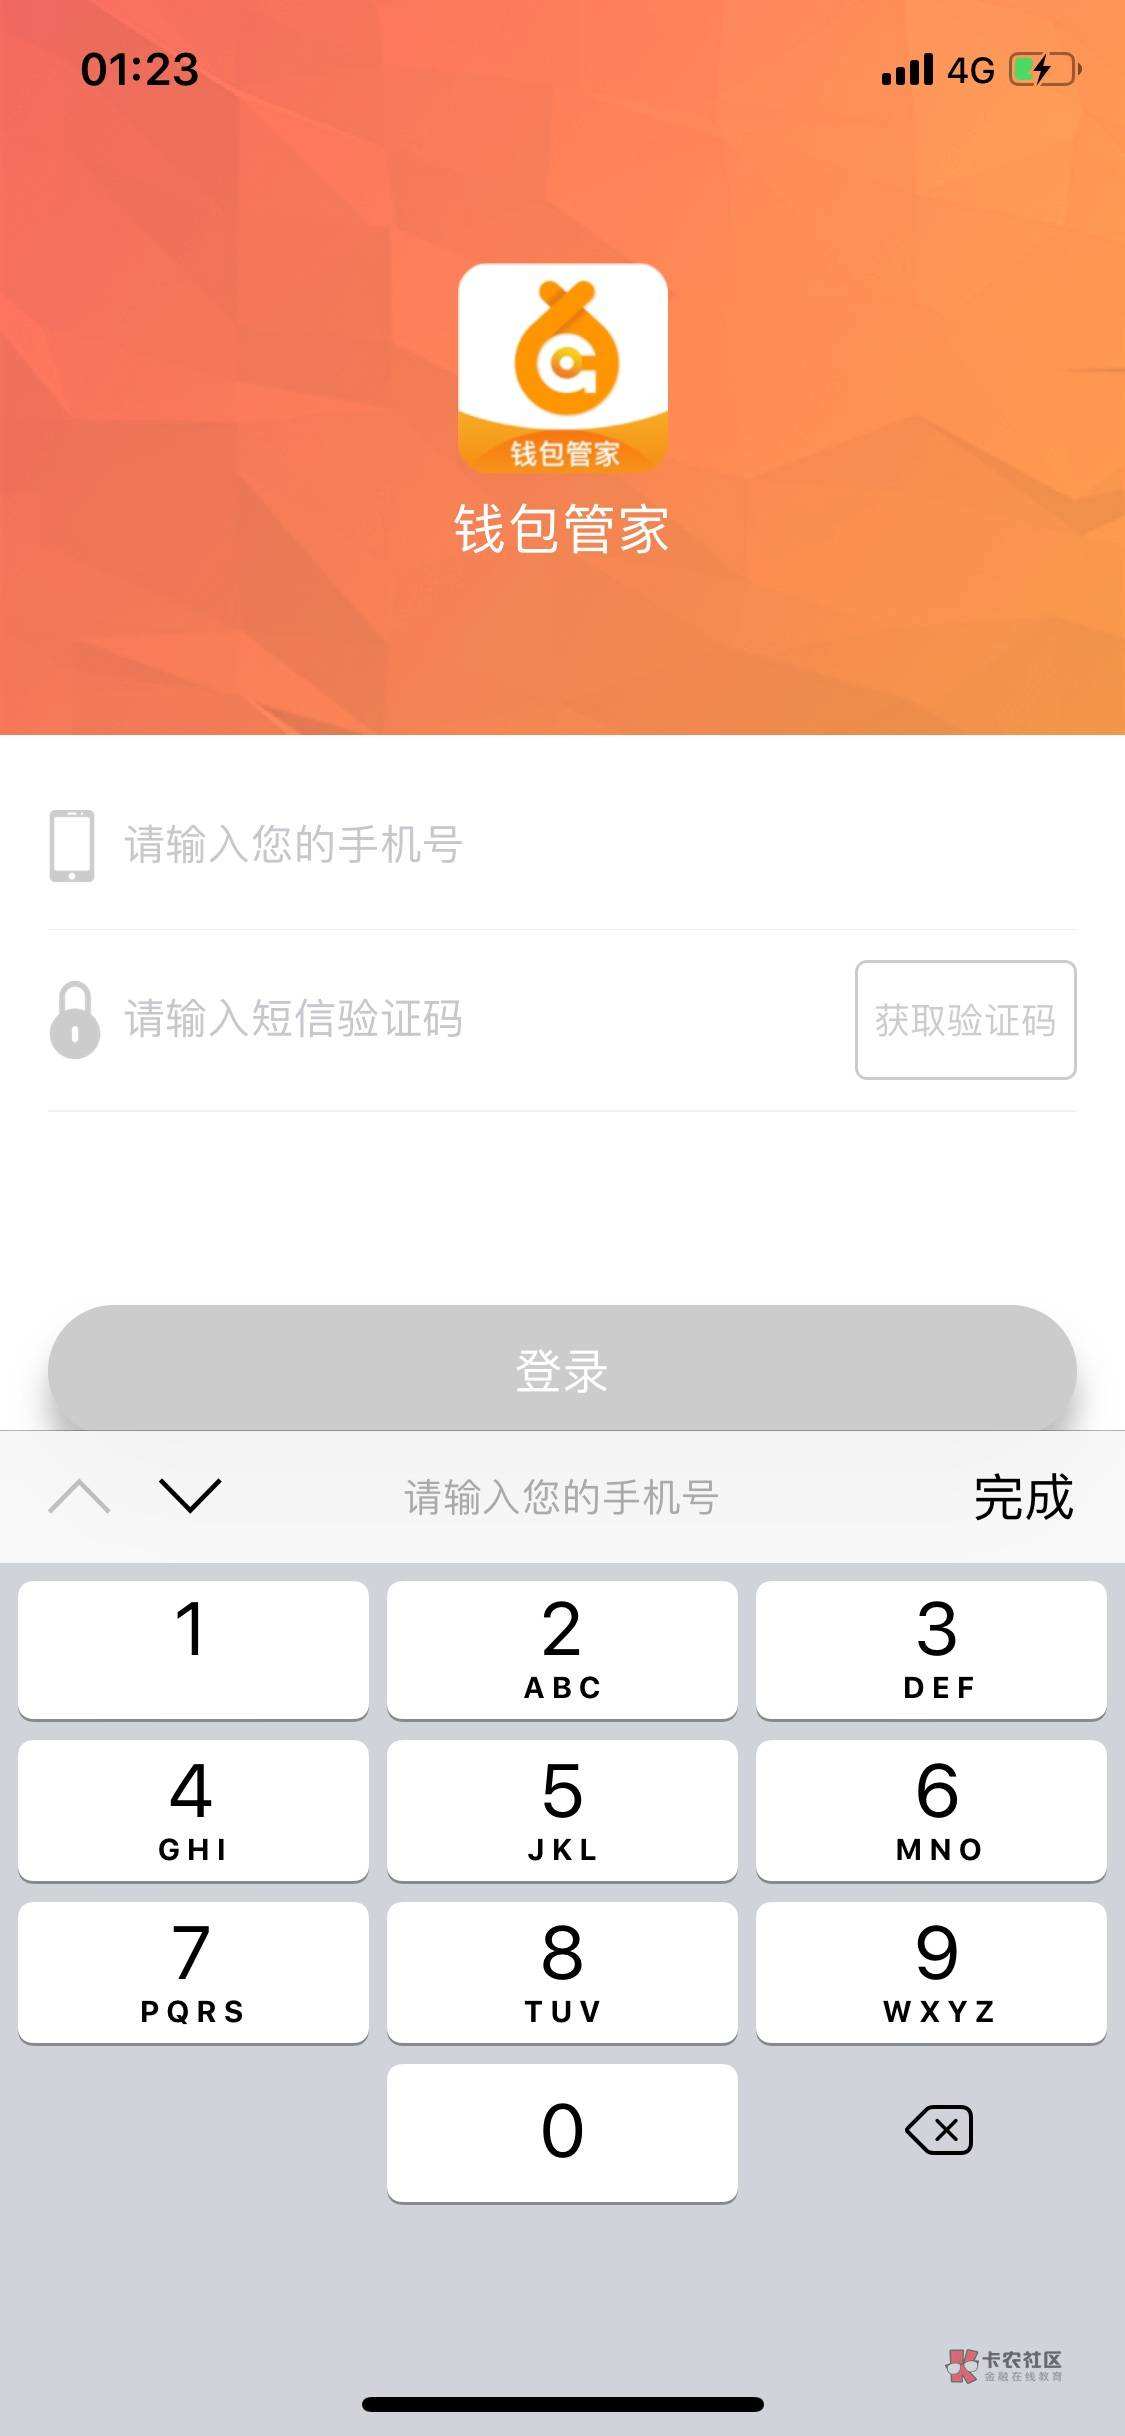 连乐无线验证码客户端实卡接码验证码接收平台app